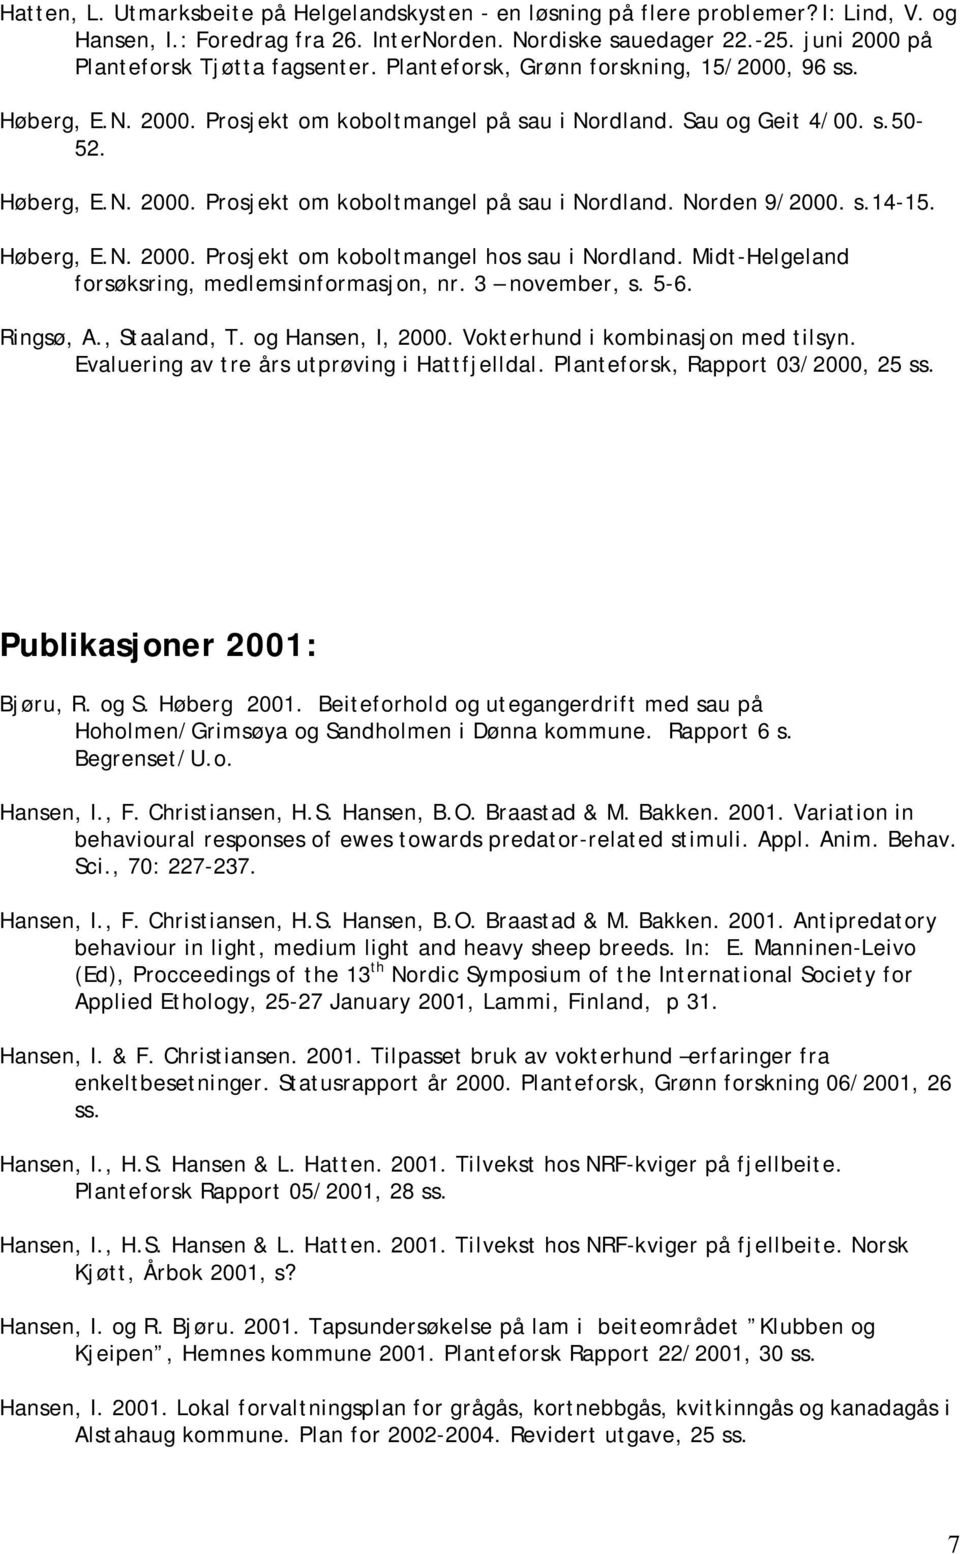 s.14-15. Høberg, E.N. 2000. Prosjekt om koboltmangel hos sau i Nordland. Midt-Helgeland forsøksring, medlemsinformasjon, nr. 3 november, s. 5-6. Ringsø, A., Staaland, T. og Hansen, I, 2000.